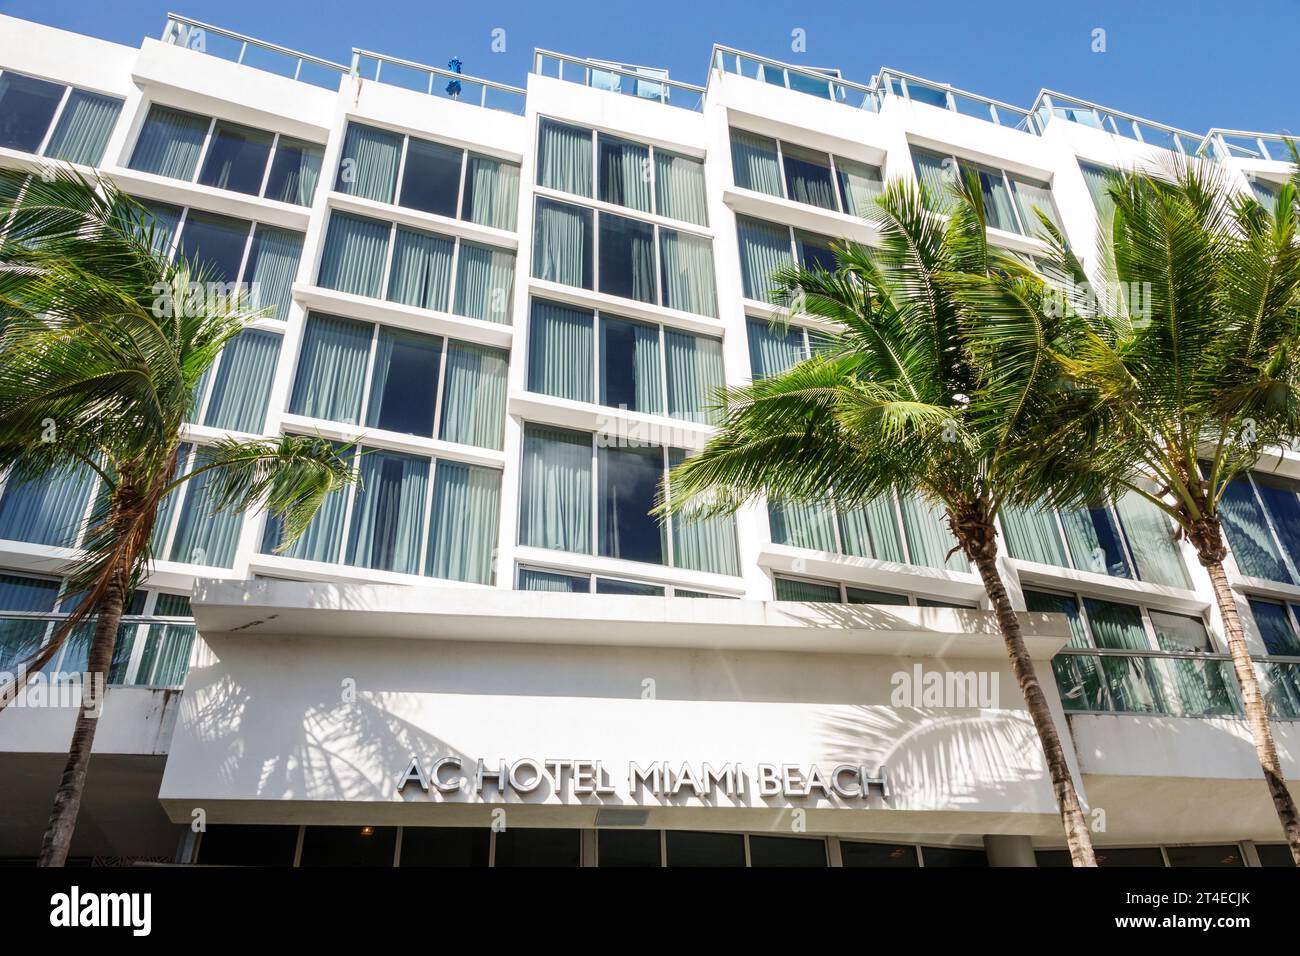 Miami Beach Florida, Außenfassade, Gebäude Vordereingang Hotel, Collins Avenue, AC Hotel by Marriott Miami Beach Schild, Hotels Motels Geschäfte Stockfoto